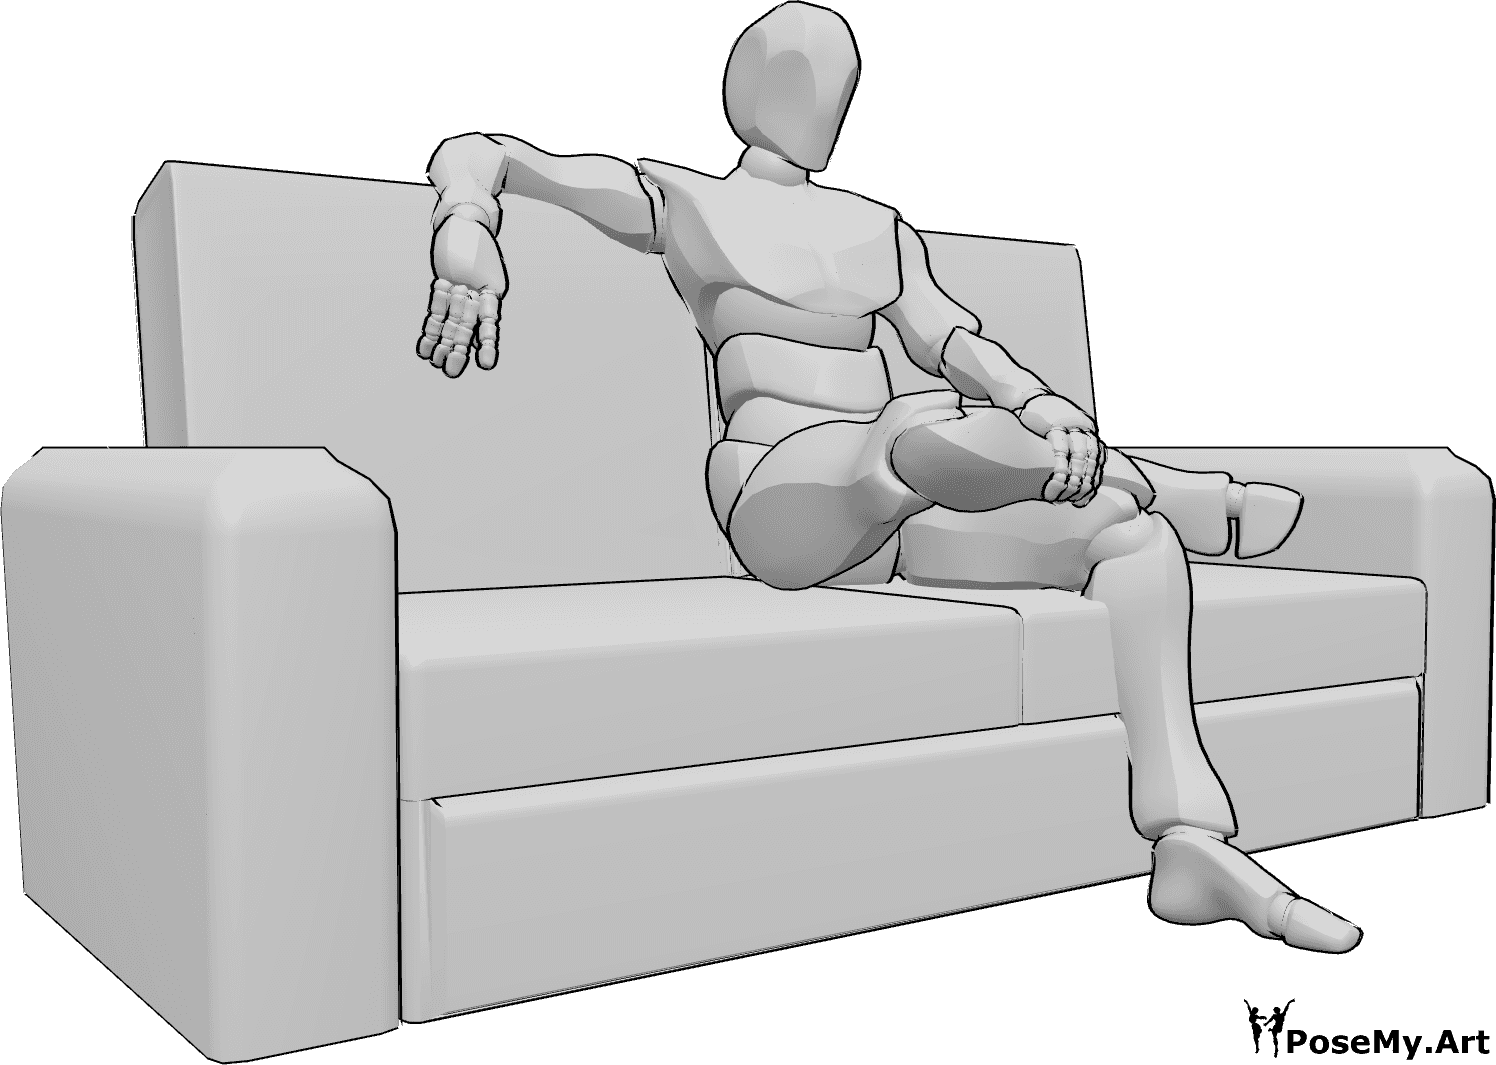 Riferimento alle pose- Posizione seduta a gambe incrociate - L'uomo è seduto sul divano con le gambe incrociate, si tiene la gamba con la mano sinistra e appoggia la mano destra sul divano.